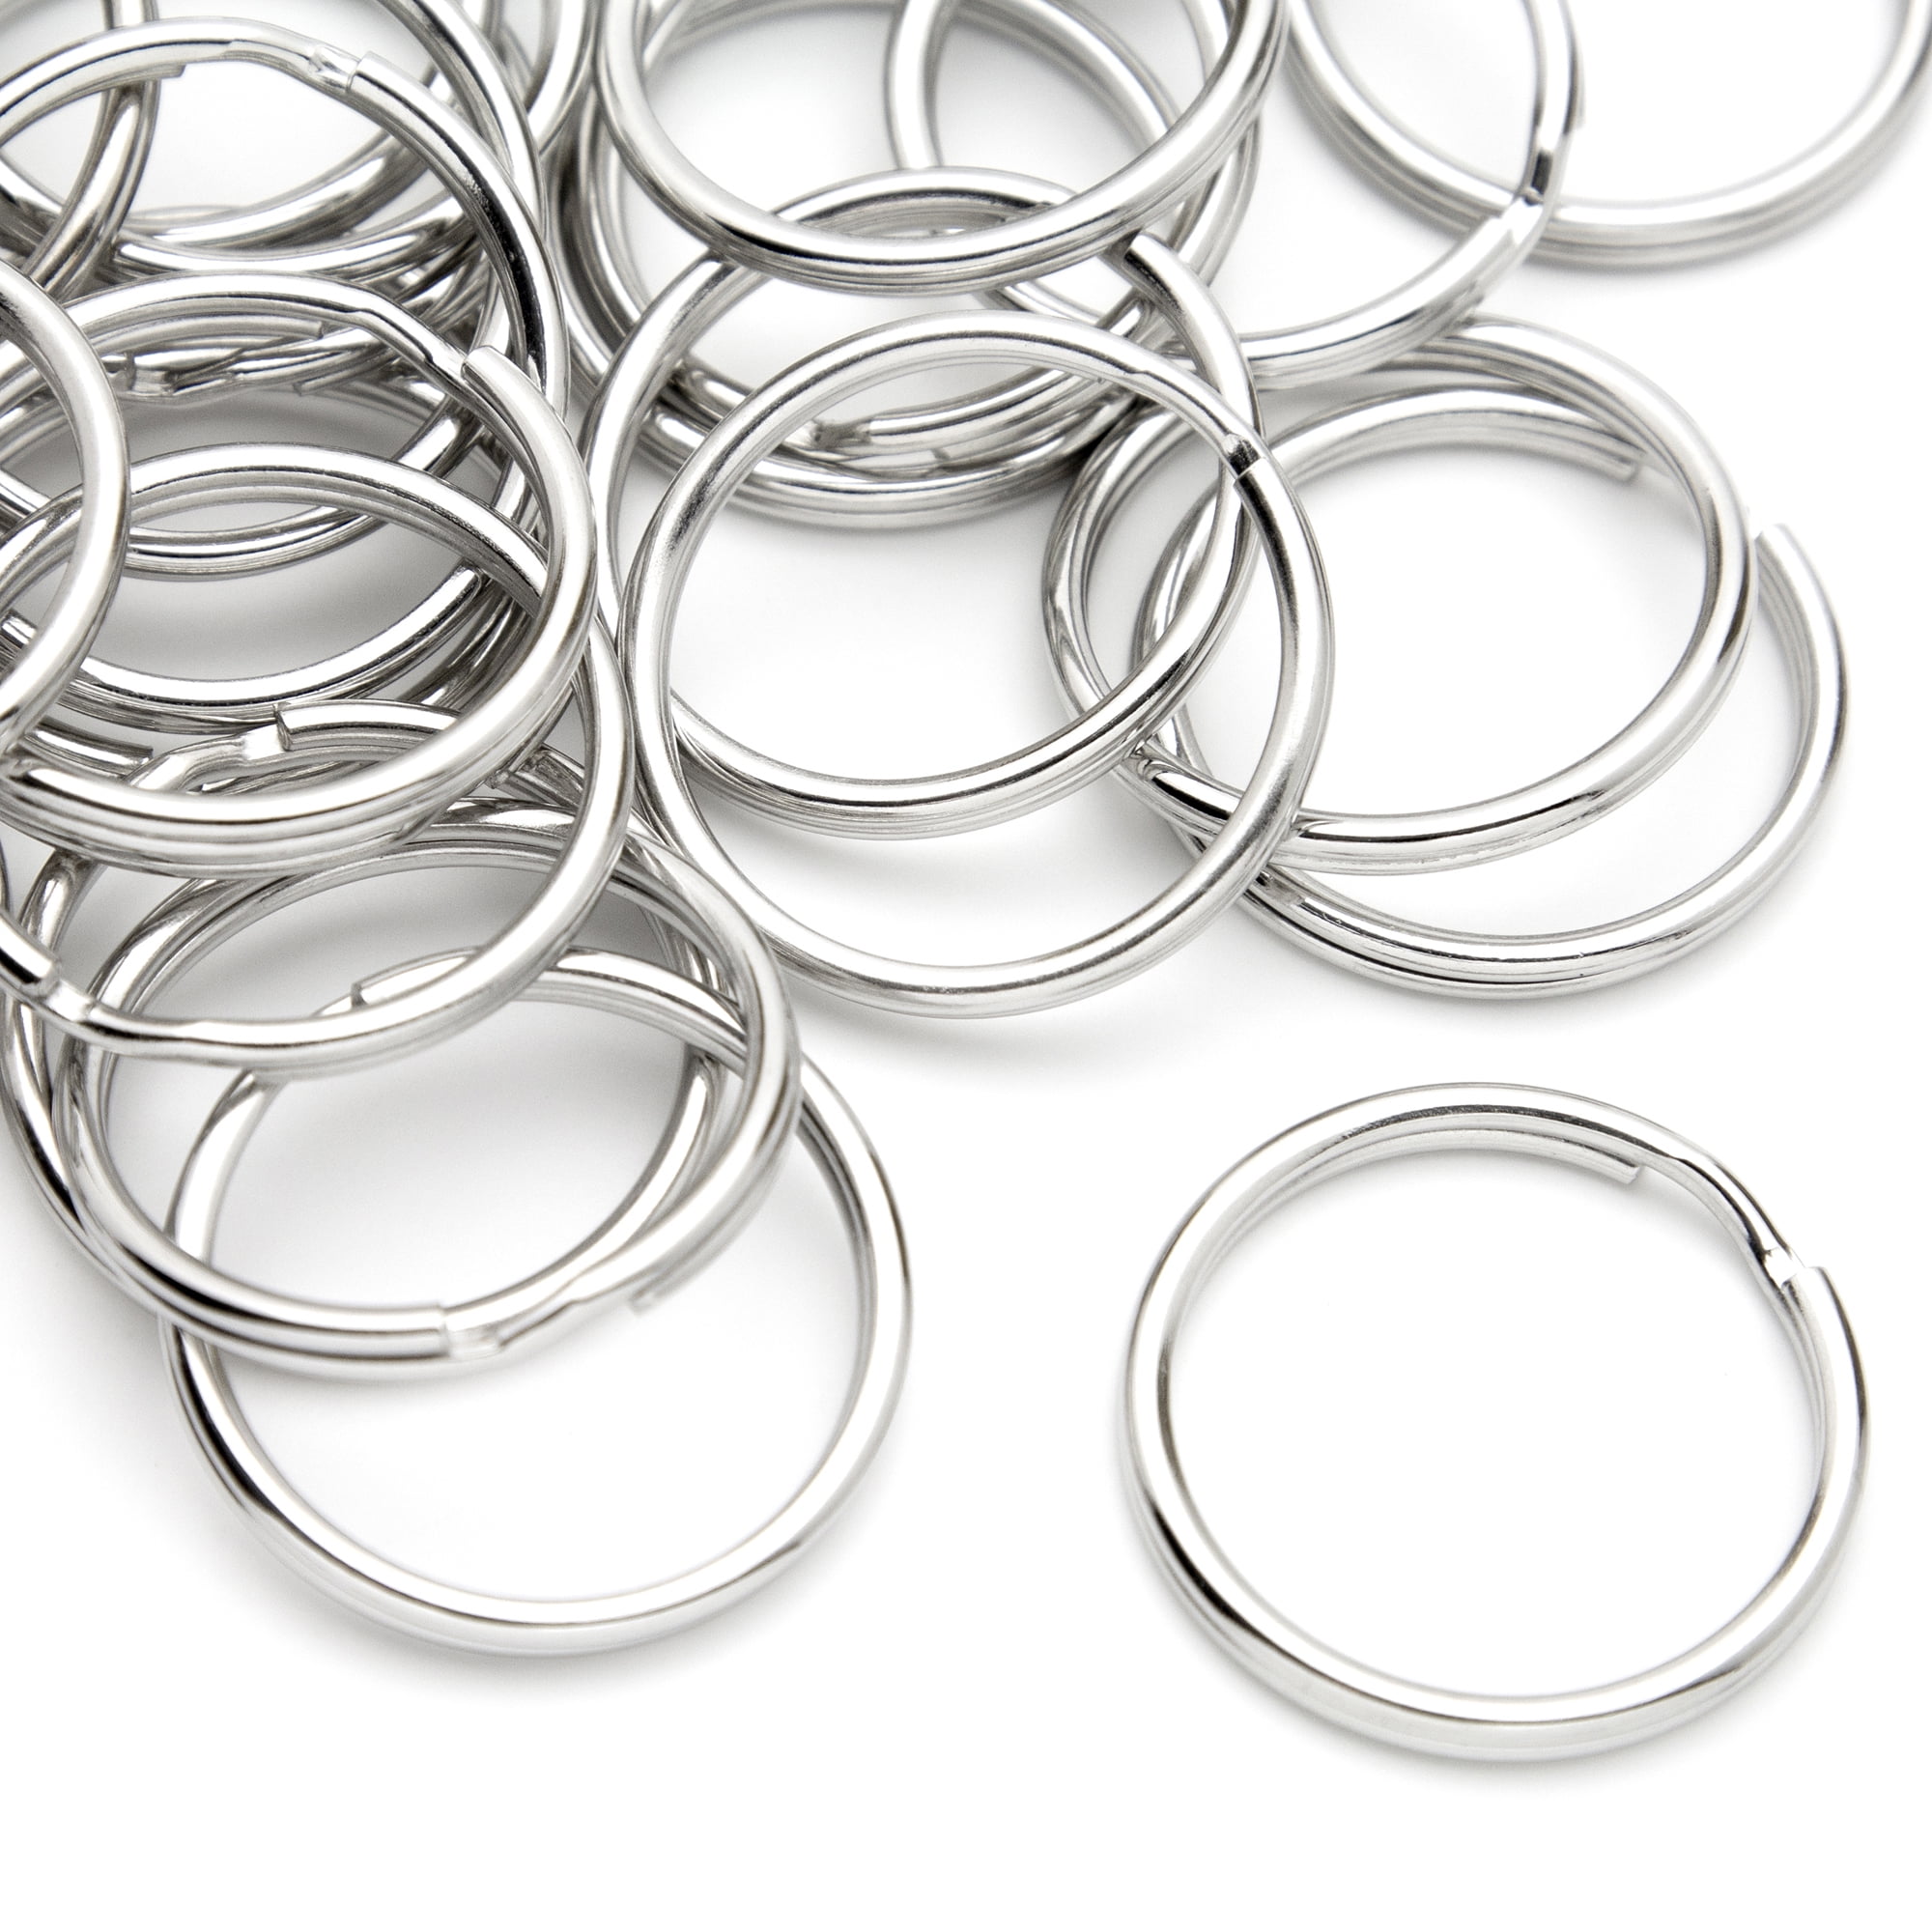 Double Loop Split Ring Key Rings Keyring Craft Findings Hoop  Vary Size & Colour